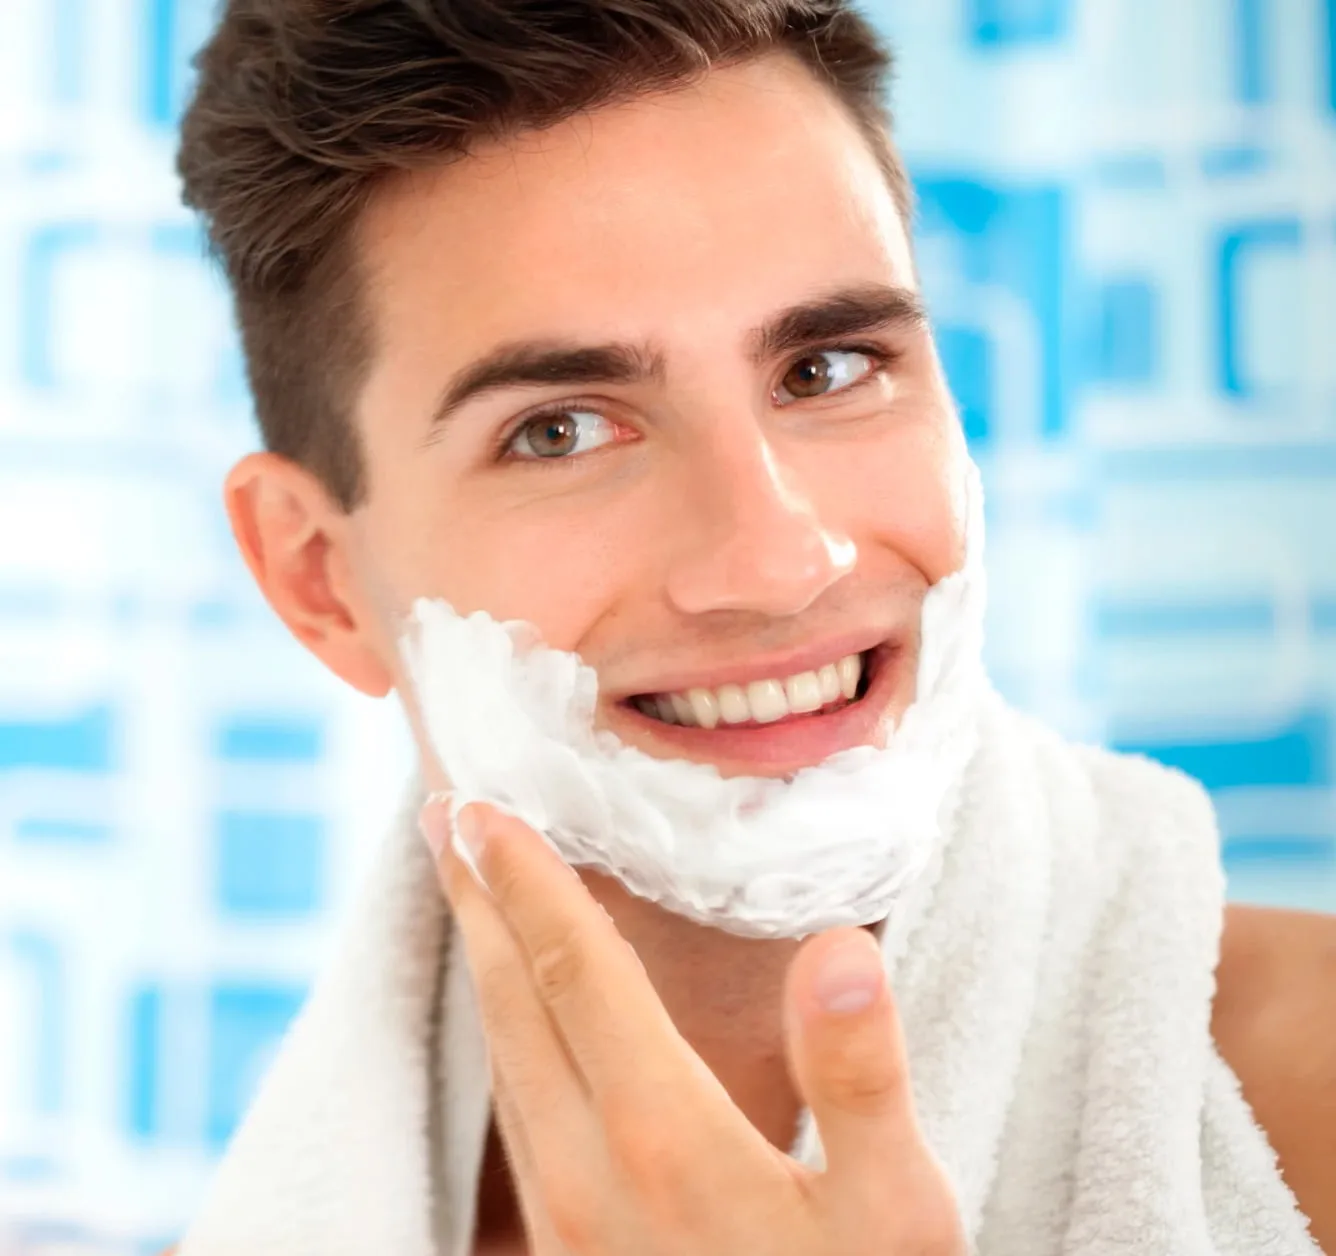 吉列泡沫薄荷剃須泡沫讓您長時間享受清新順滑的剃須體驗